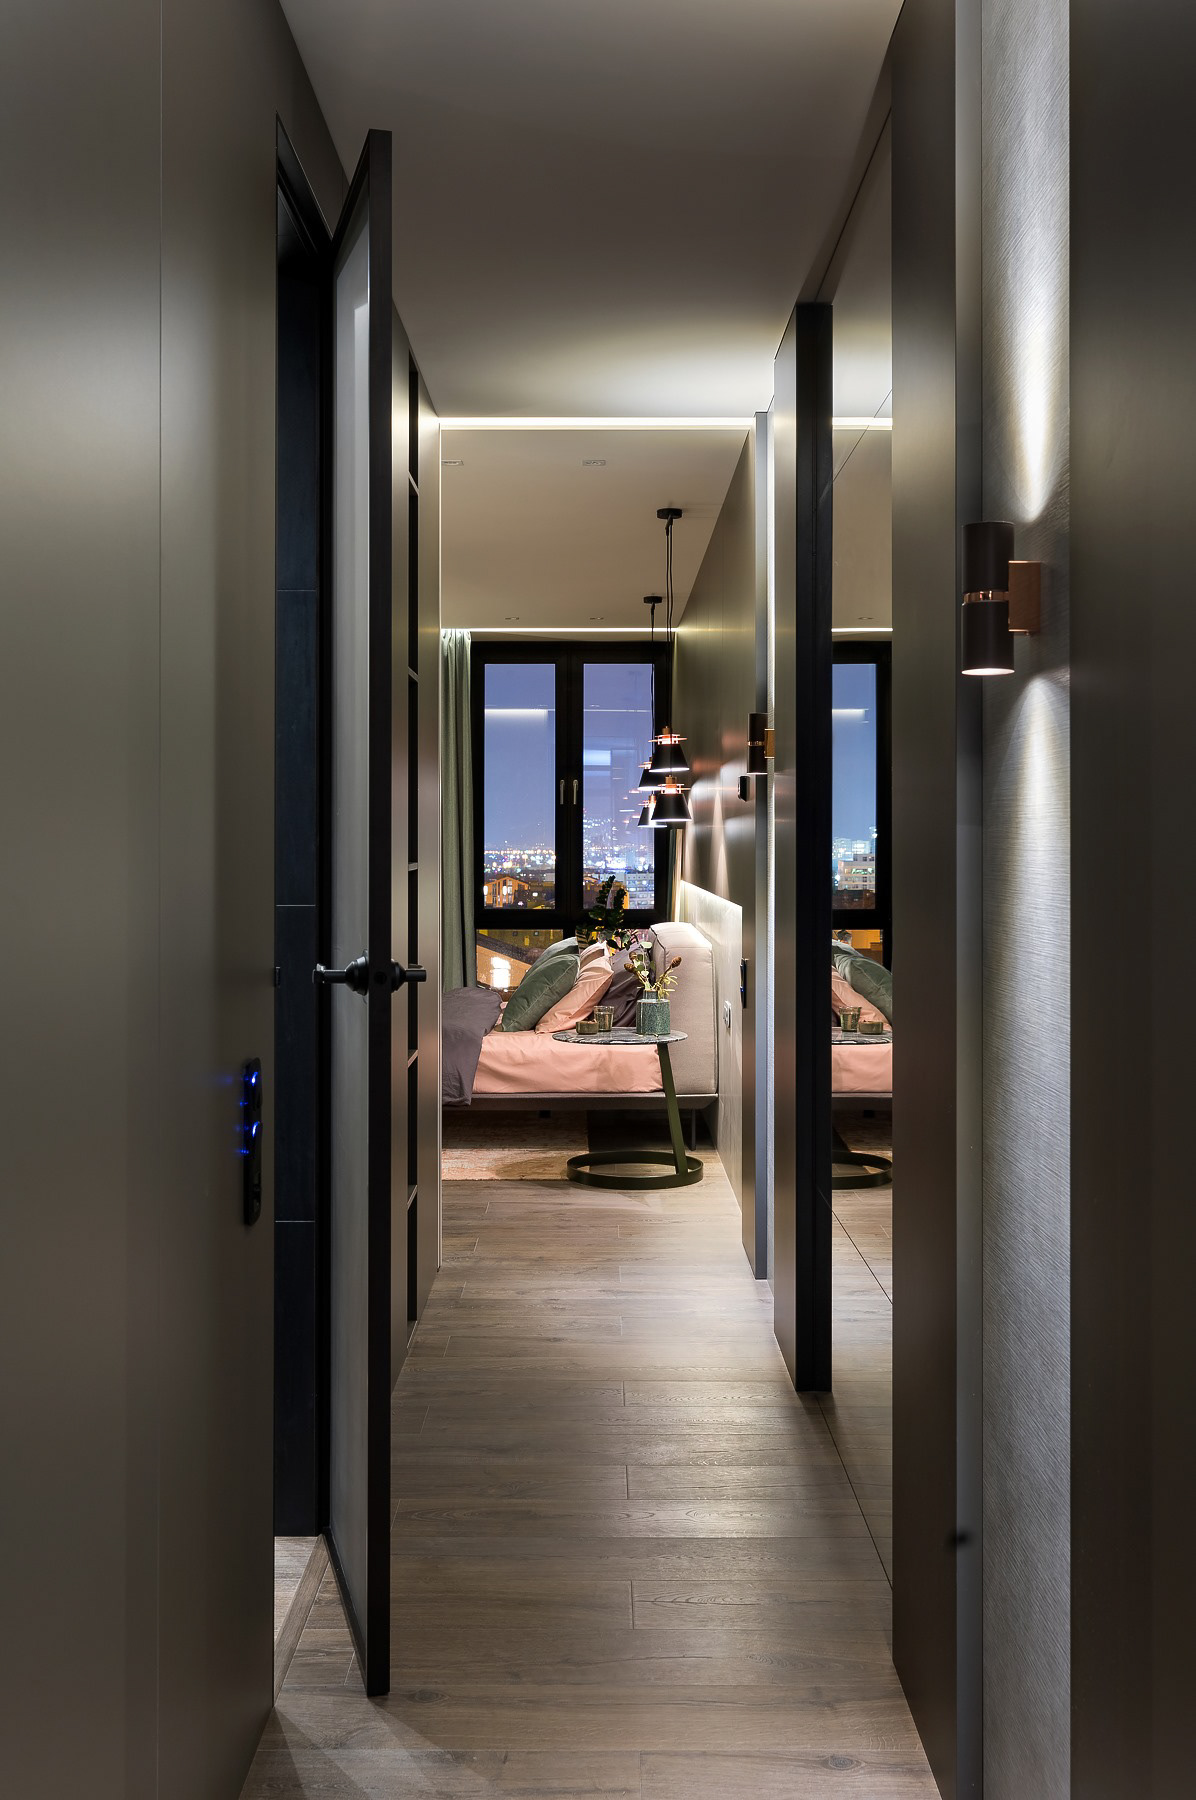 apartment architecture bathroom bedroom designerkiev elenafateevadesigner Fateeva fateevadesign Interior interiordesign